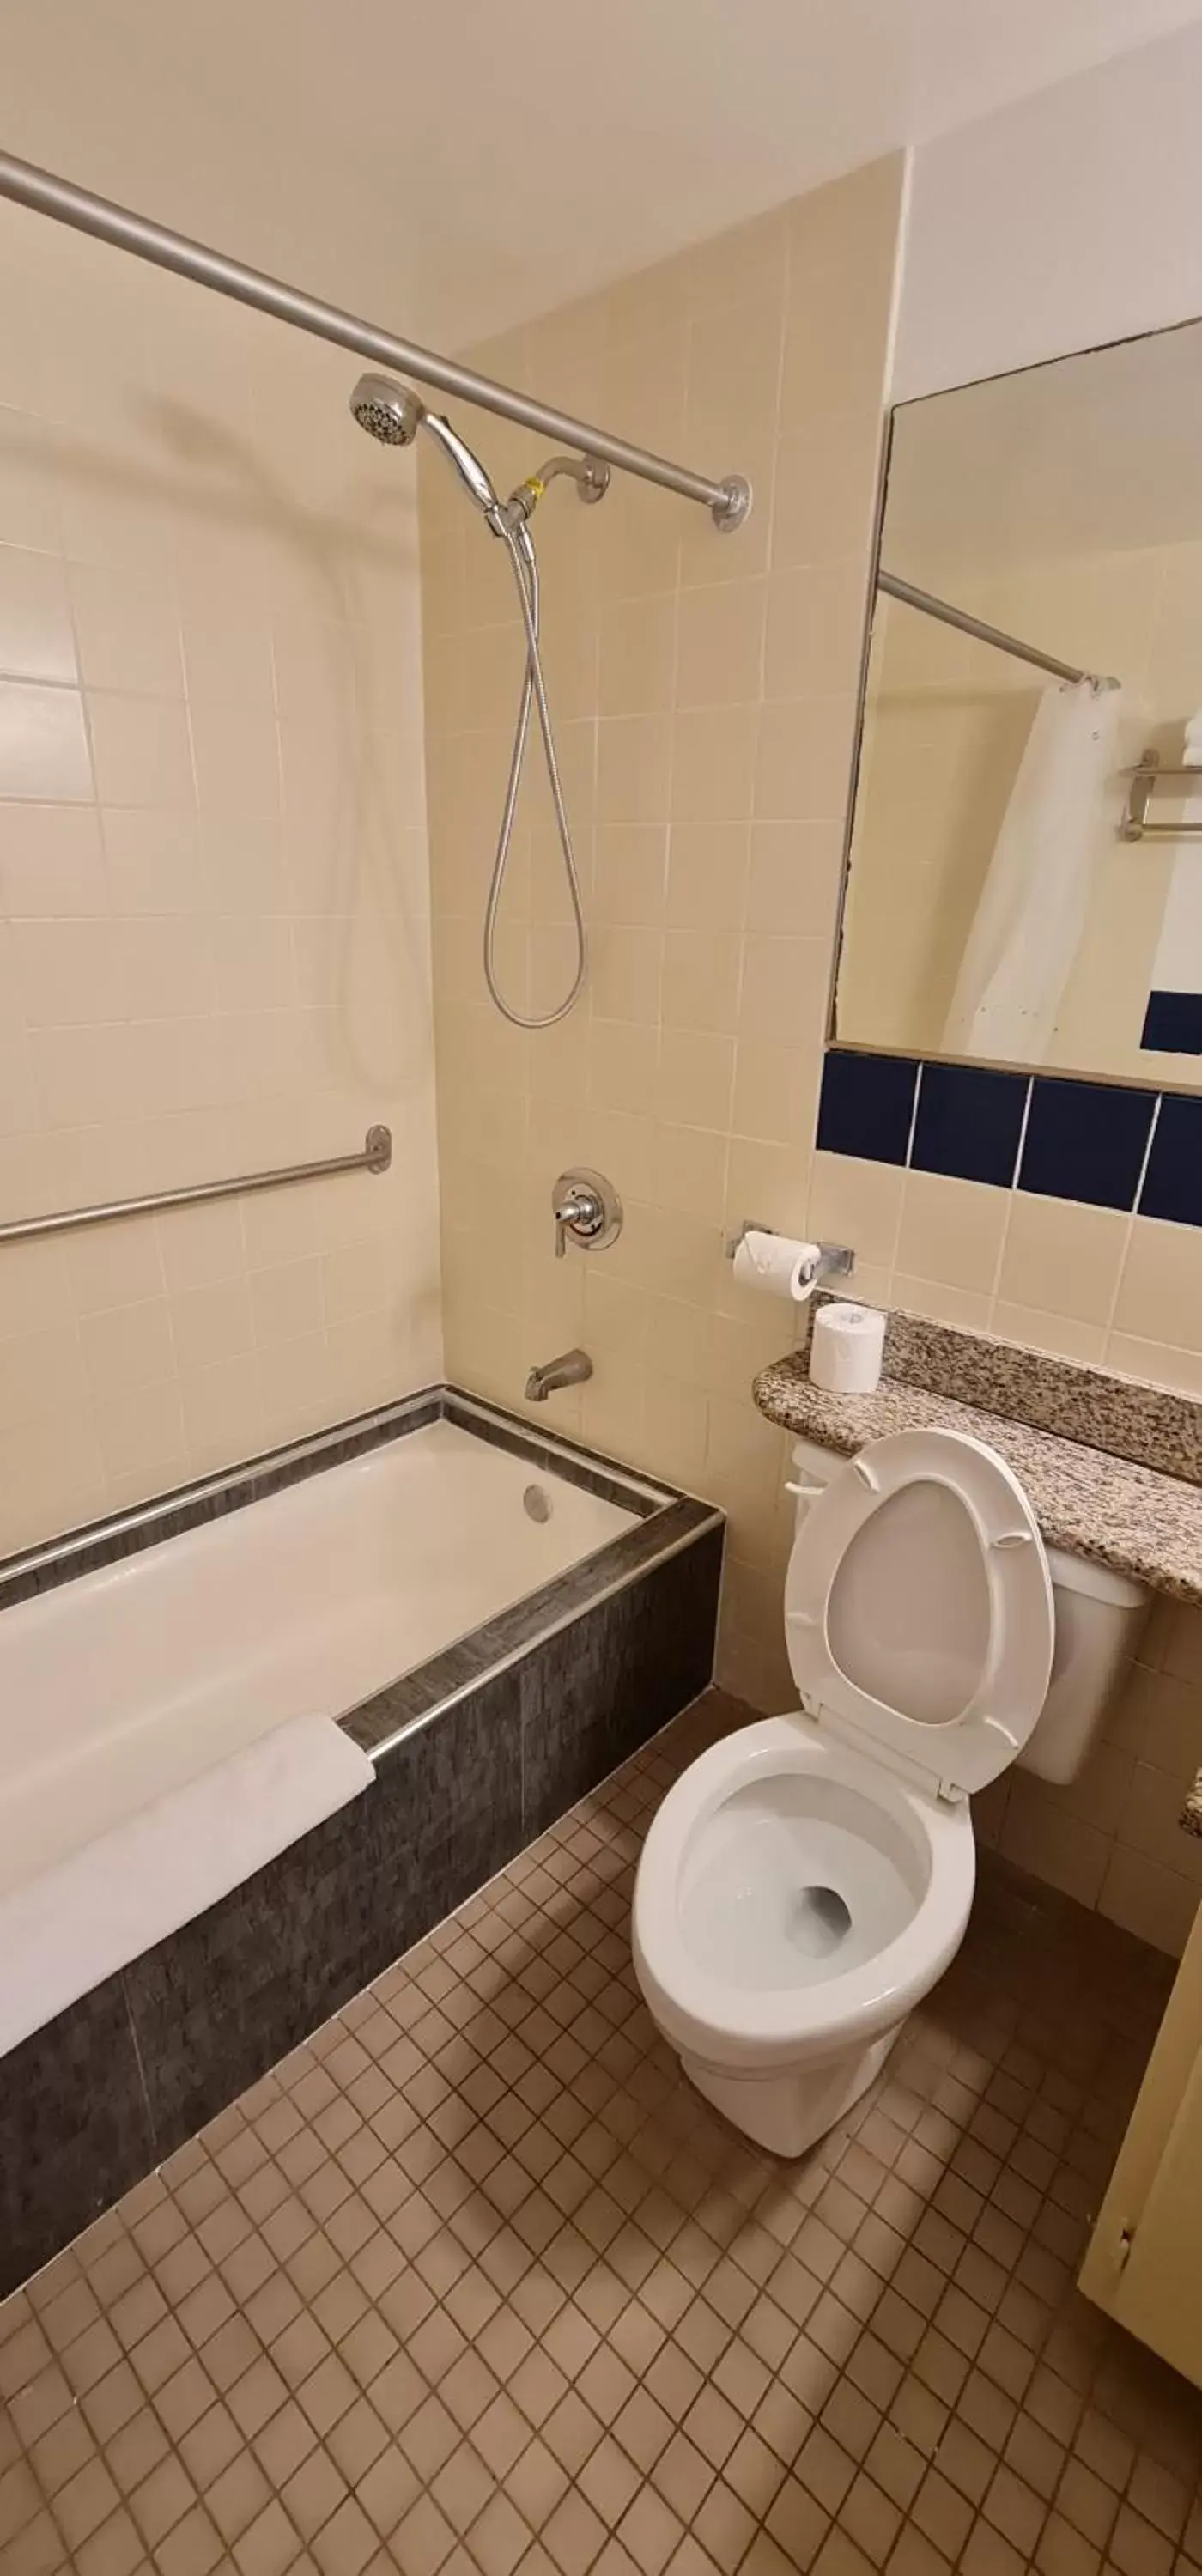 Bathroom in SureStay Hotel by Best Western Guam Palmridge